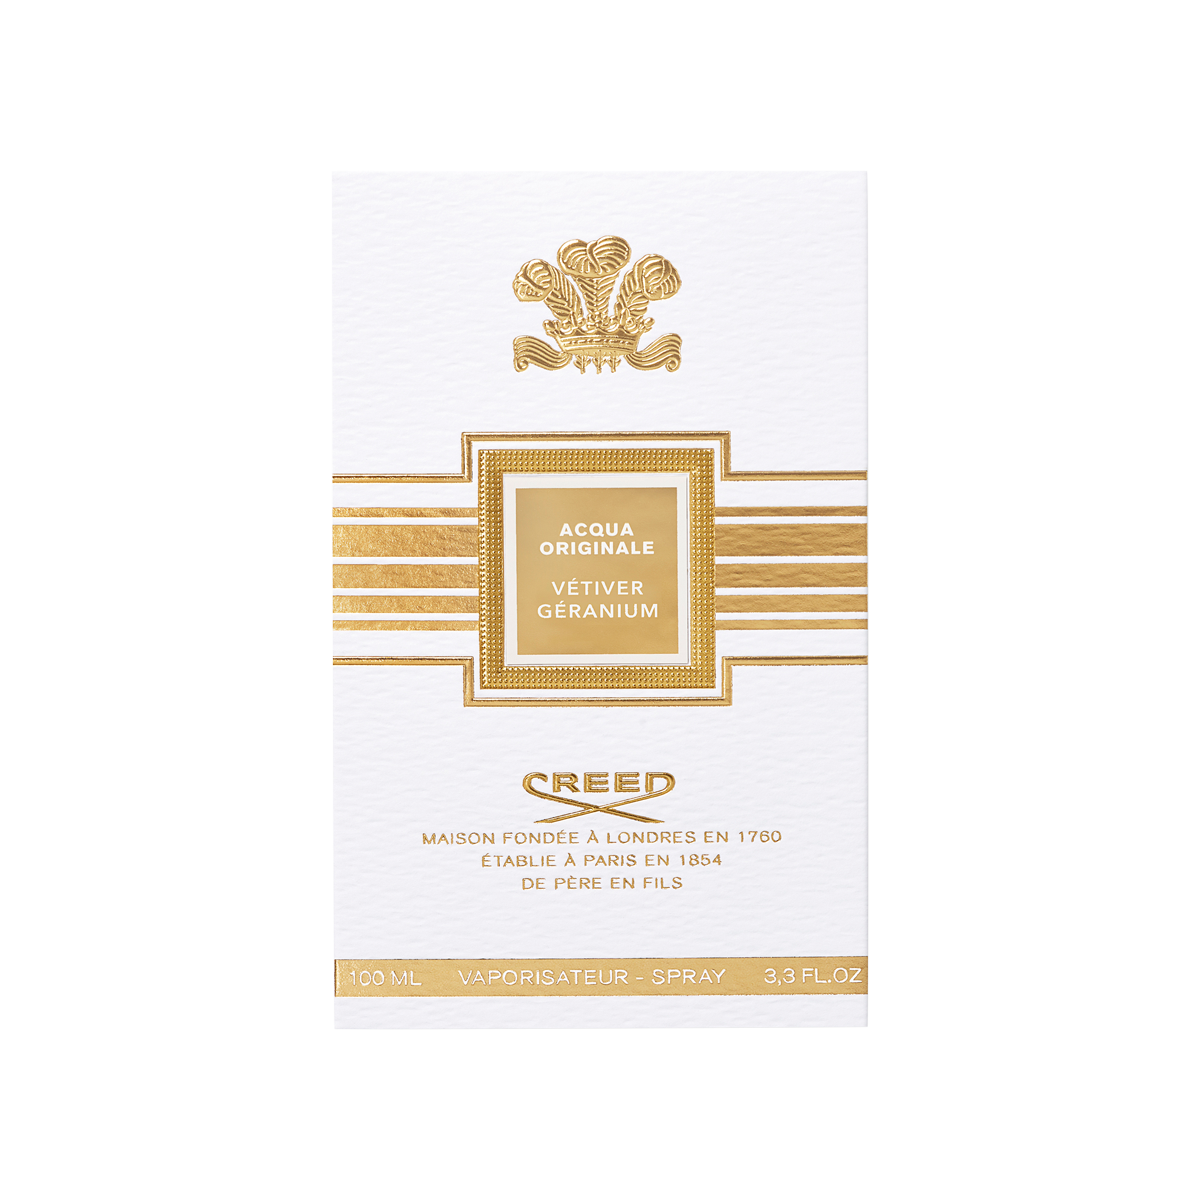 Creed - Acqua Originale Vetiver Geranium